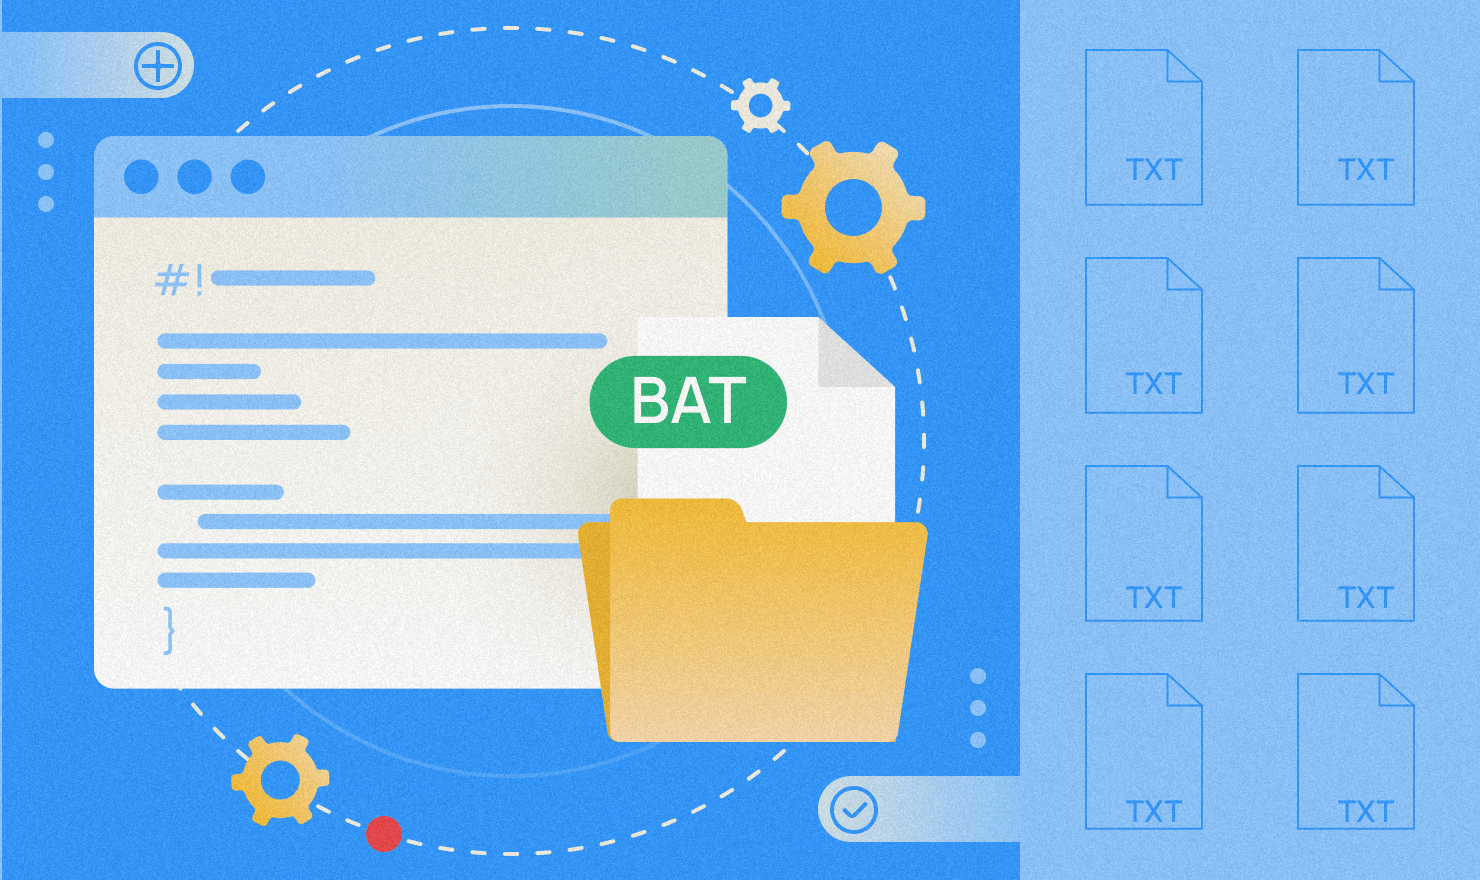 Bat-файлы — их создание и команды